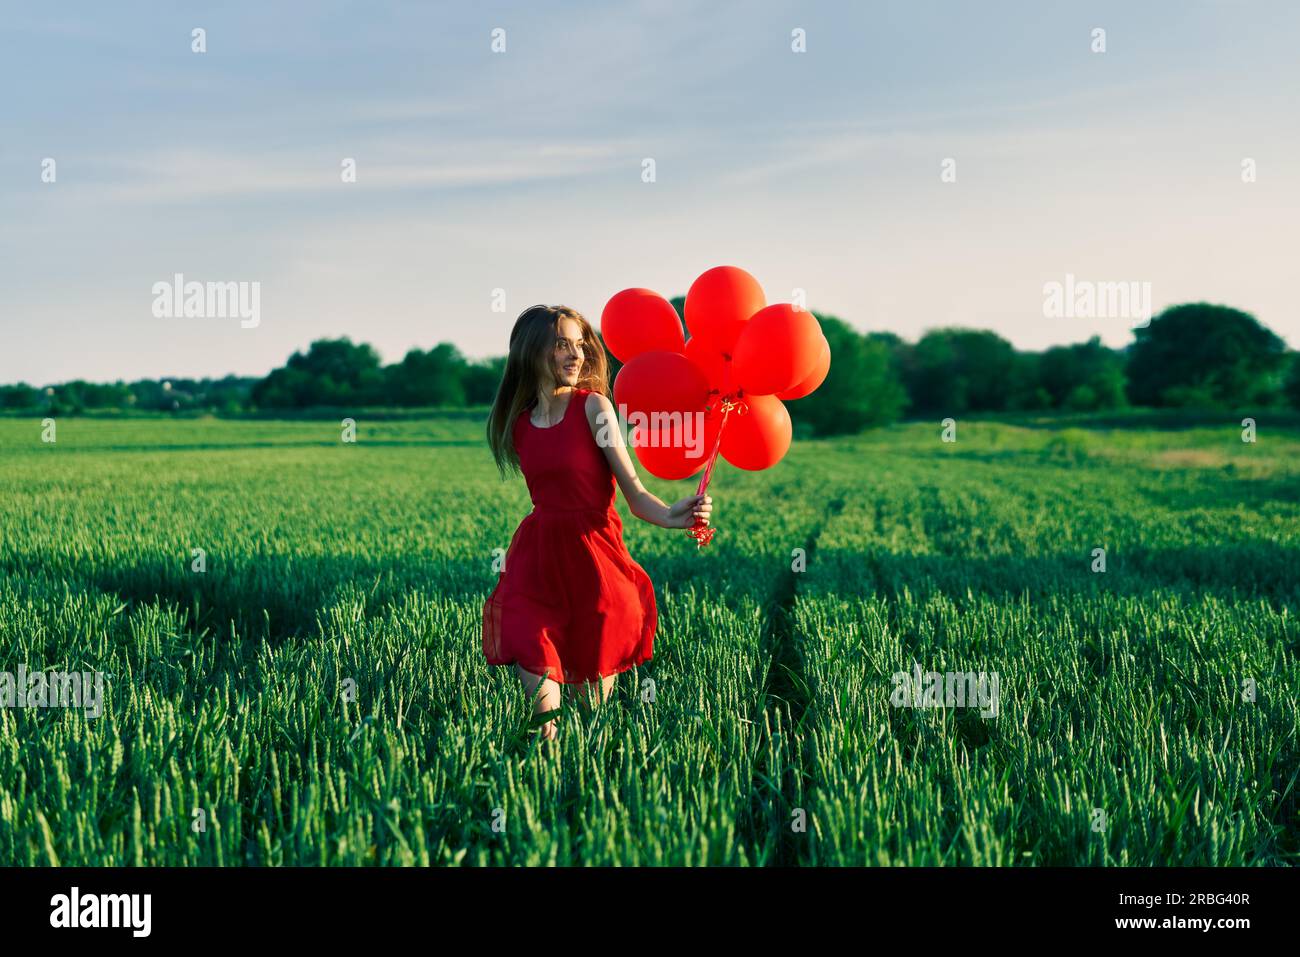 Freiheit glücklich Frau mit roten Ballons auf grün sommer feld. Spaß, Glück Konzept Stockfoto